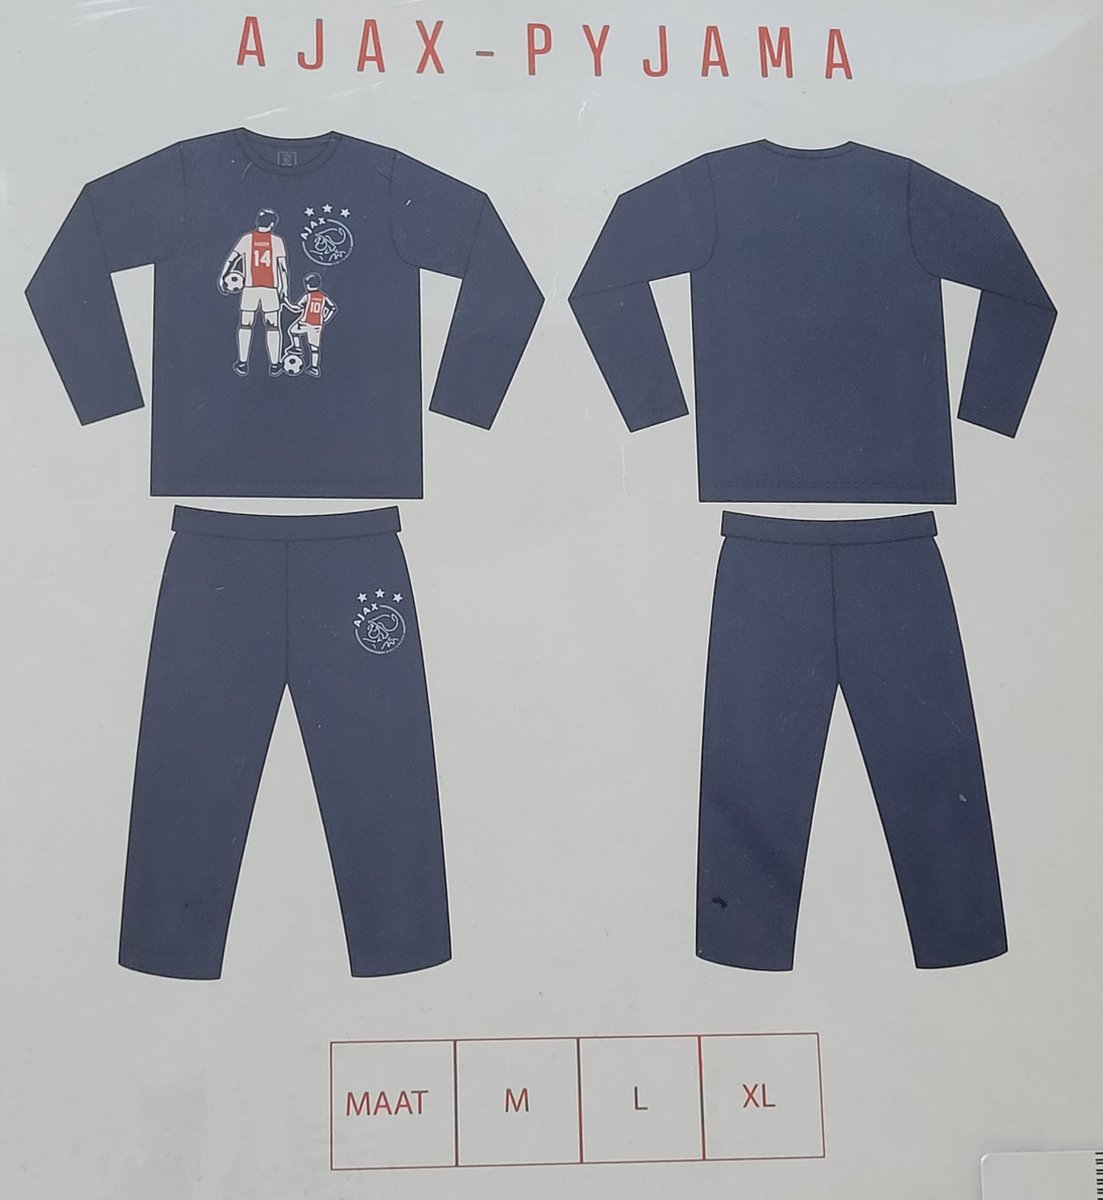 Ajax Pyjama maat M | bol.com